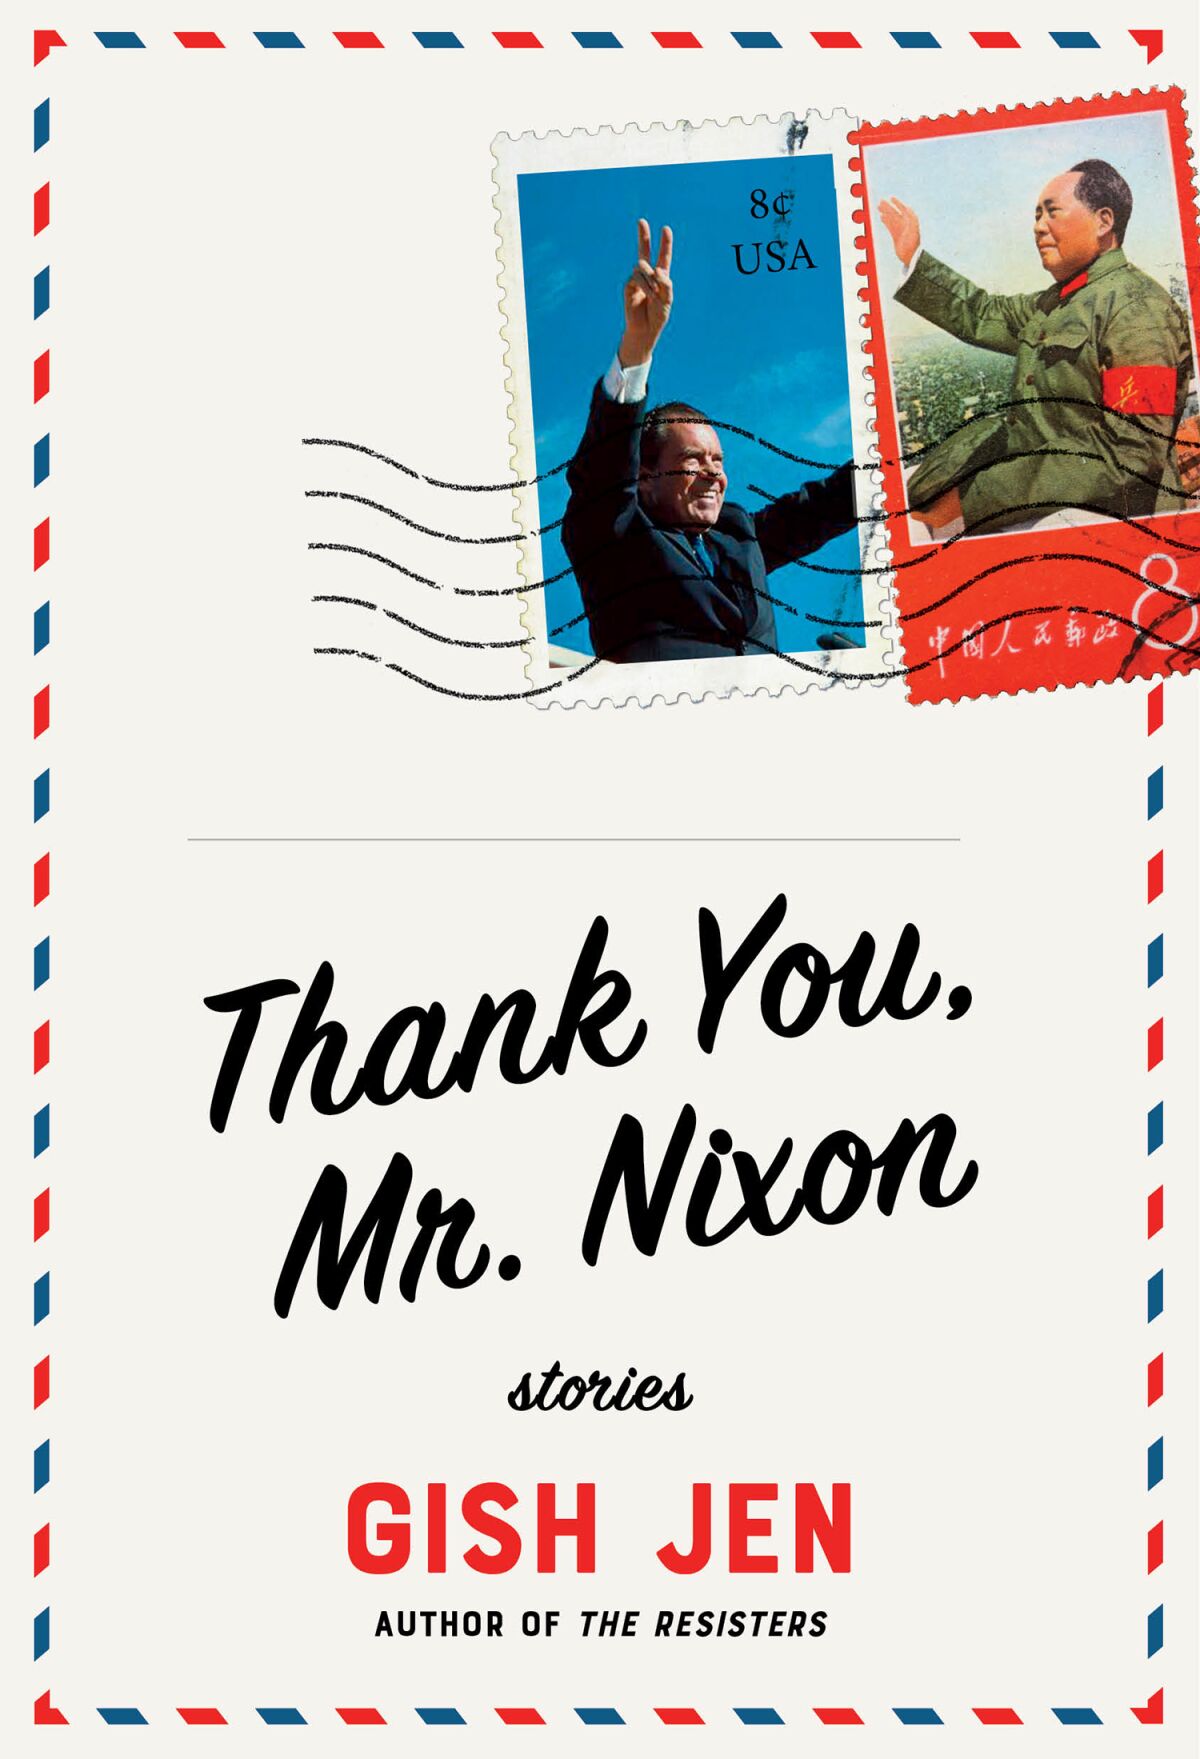 "Thank You, Mr. Nixon," by Gish Jen